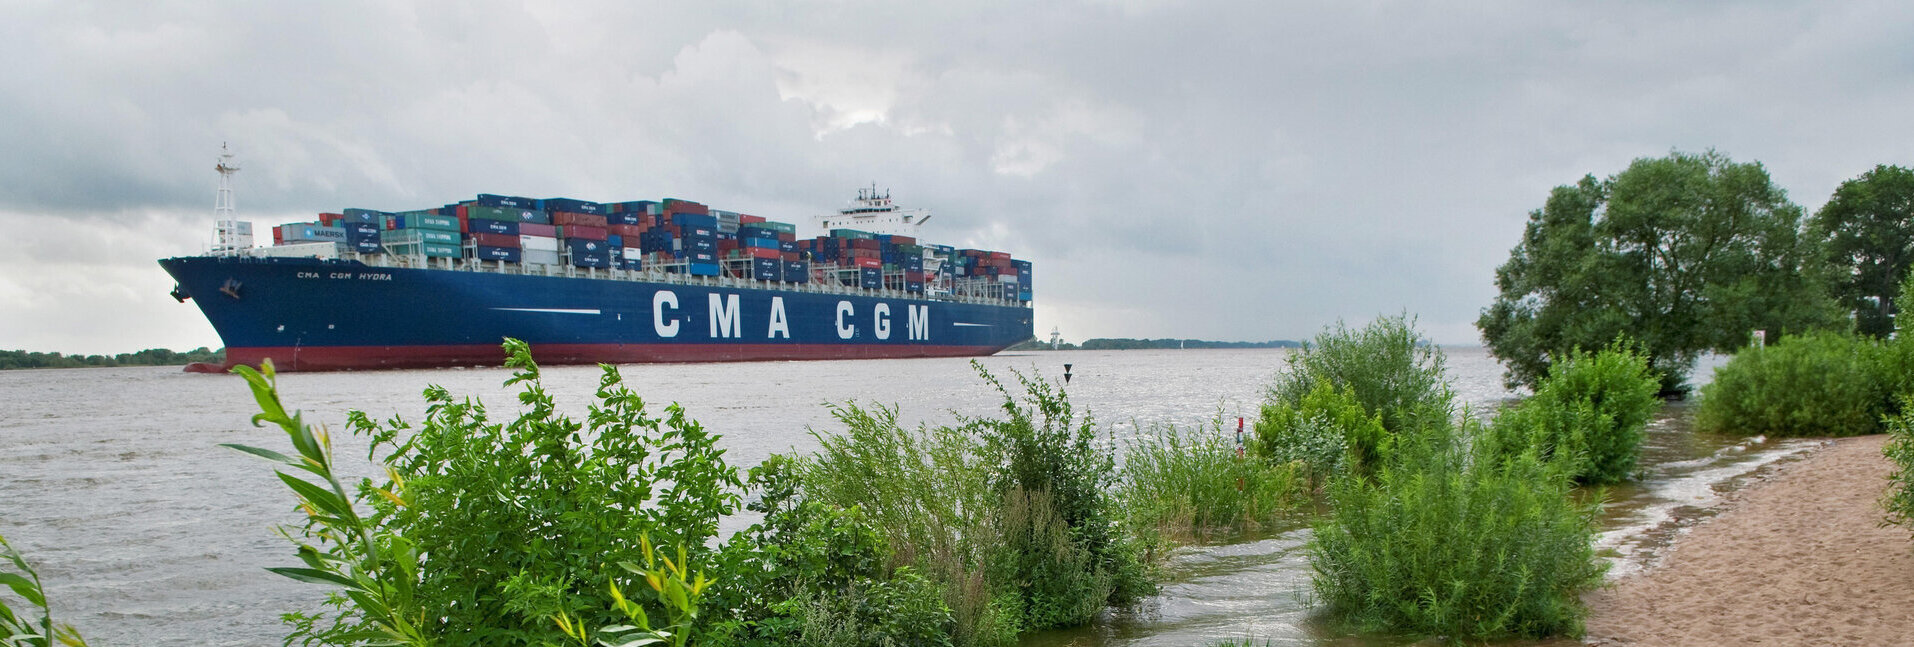 Ein großes Containerschiff auf dem Weg in den Hamburger Hafen.